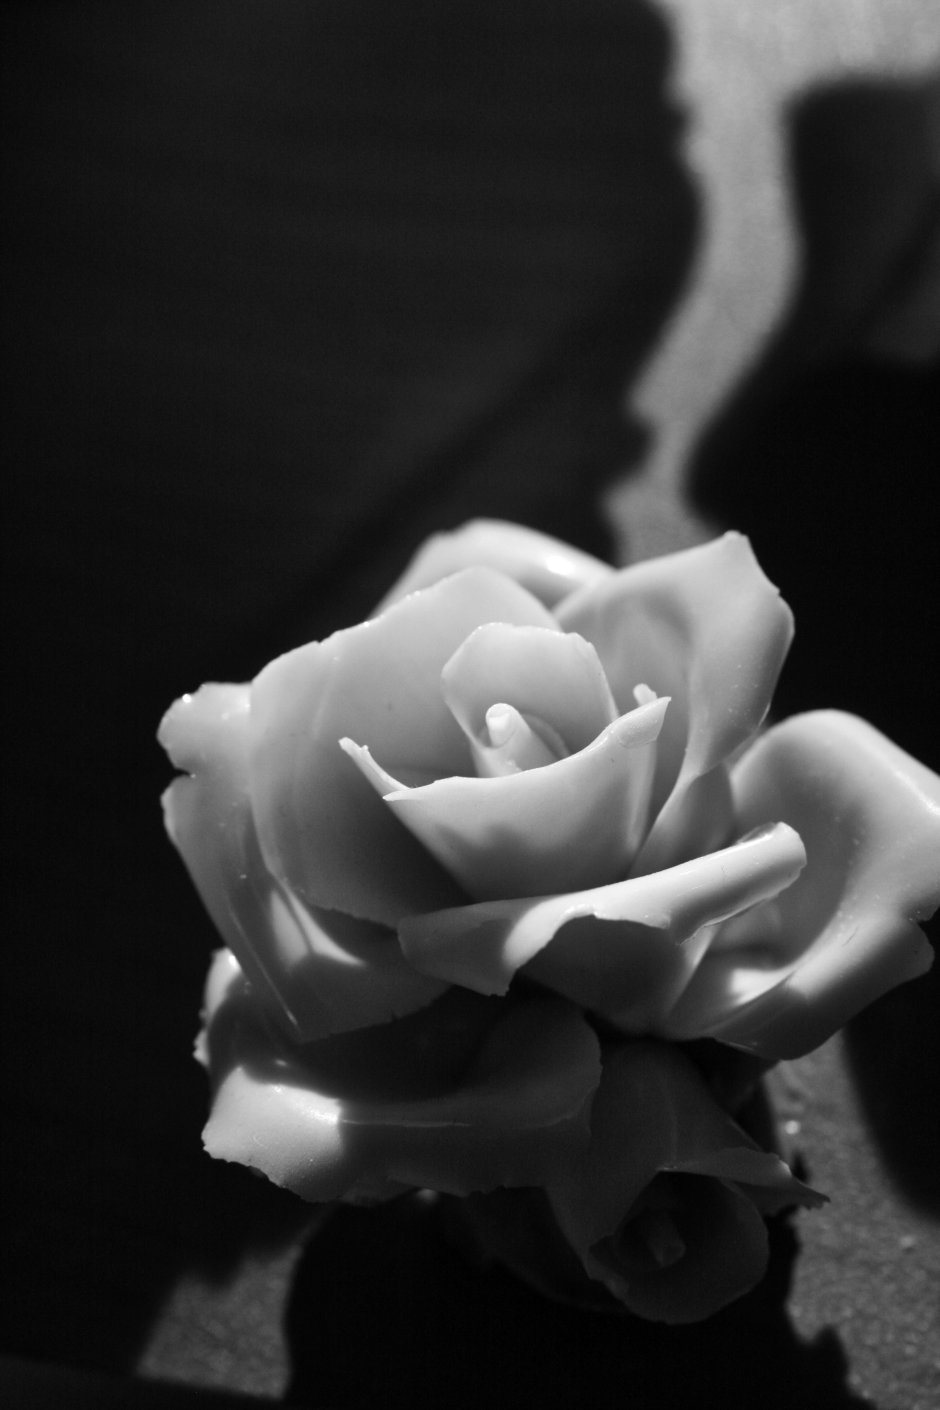 Черные и белые розы